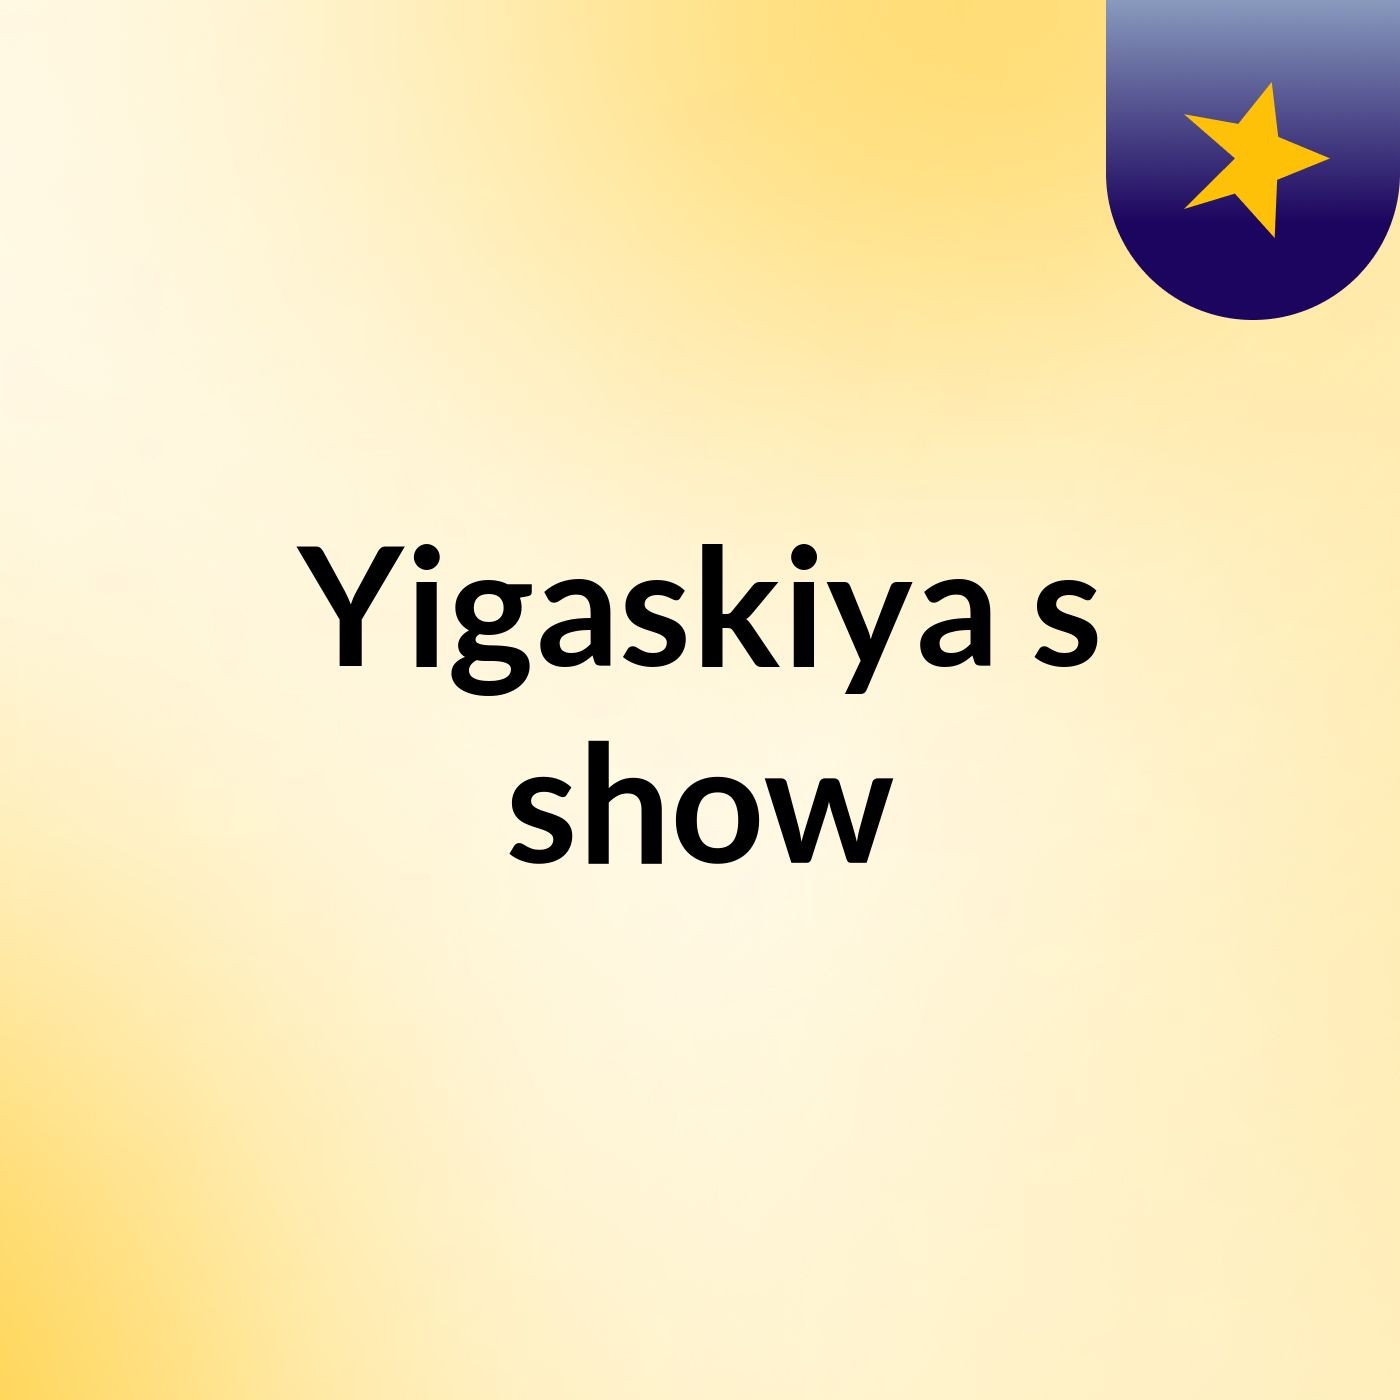 Yigaskiya's show